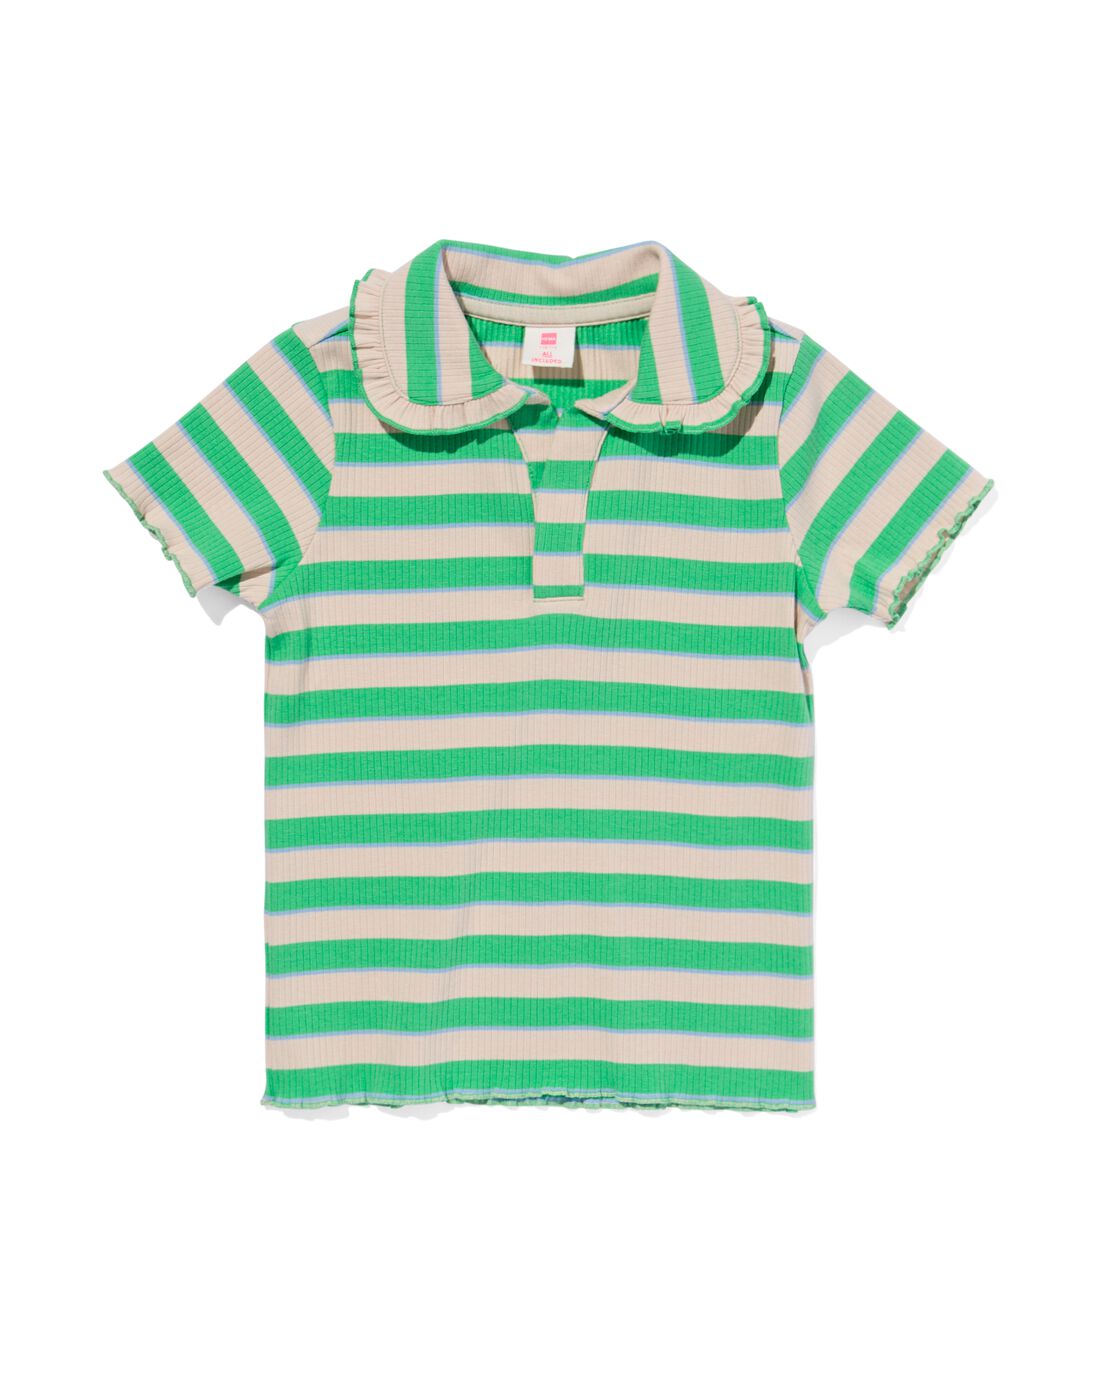 HEMA Kinder T-shirt Met Polokraag Groen (groen)